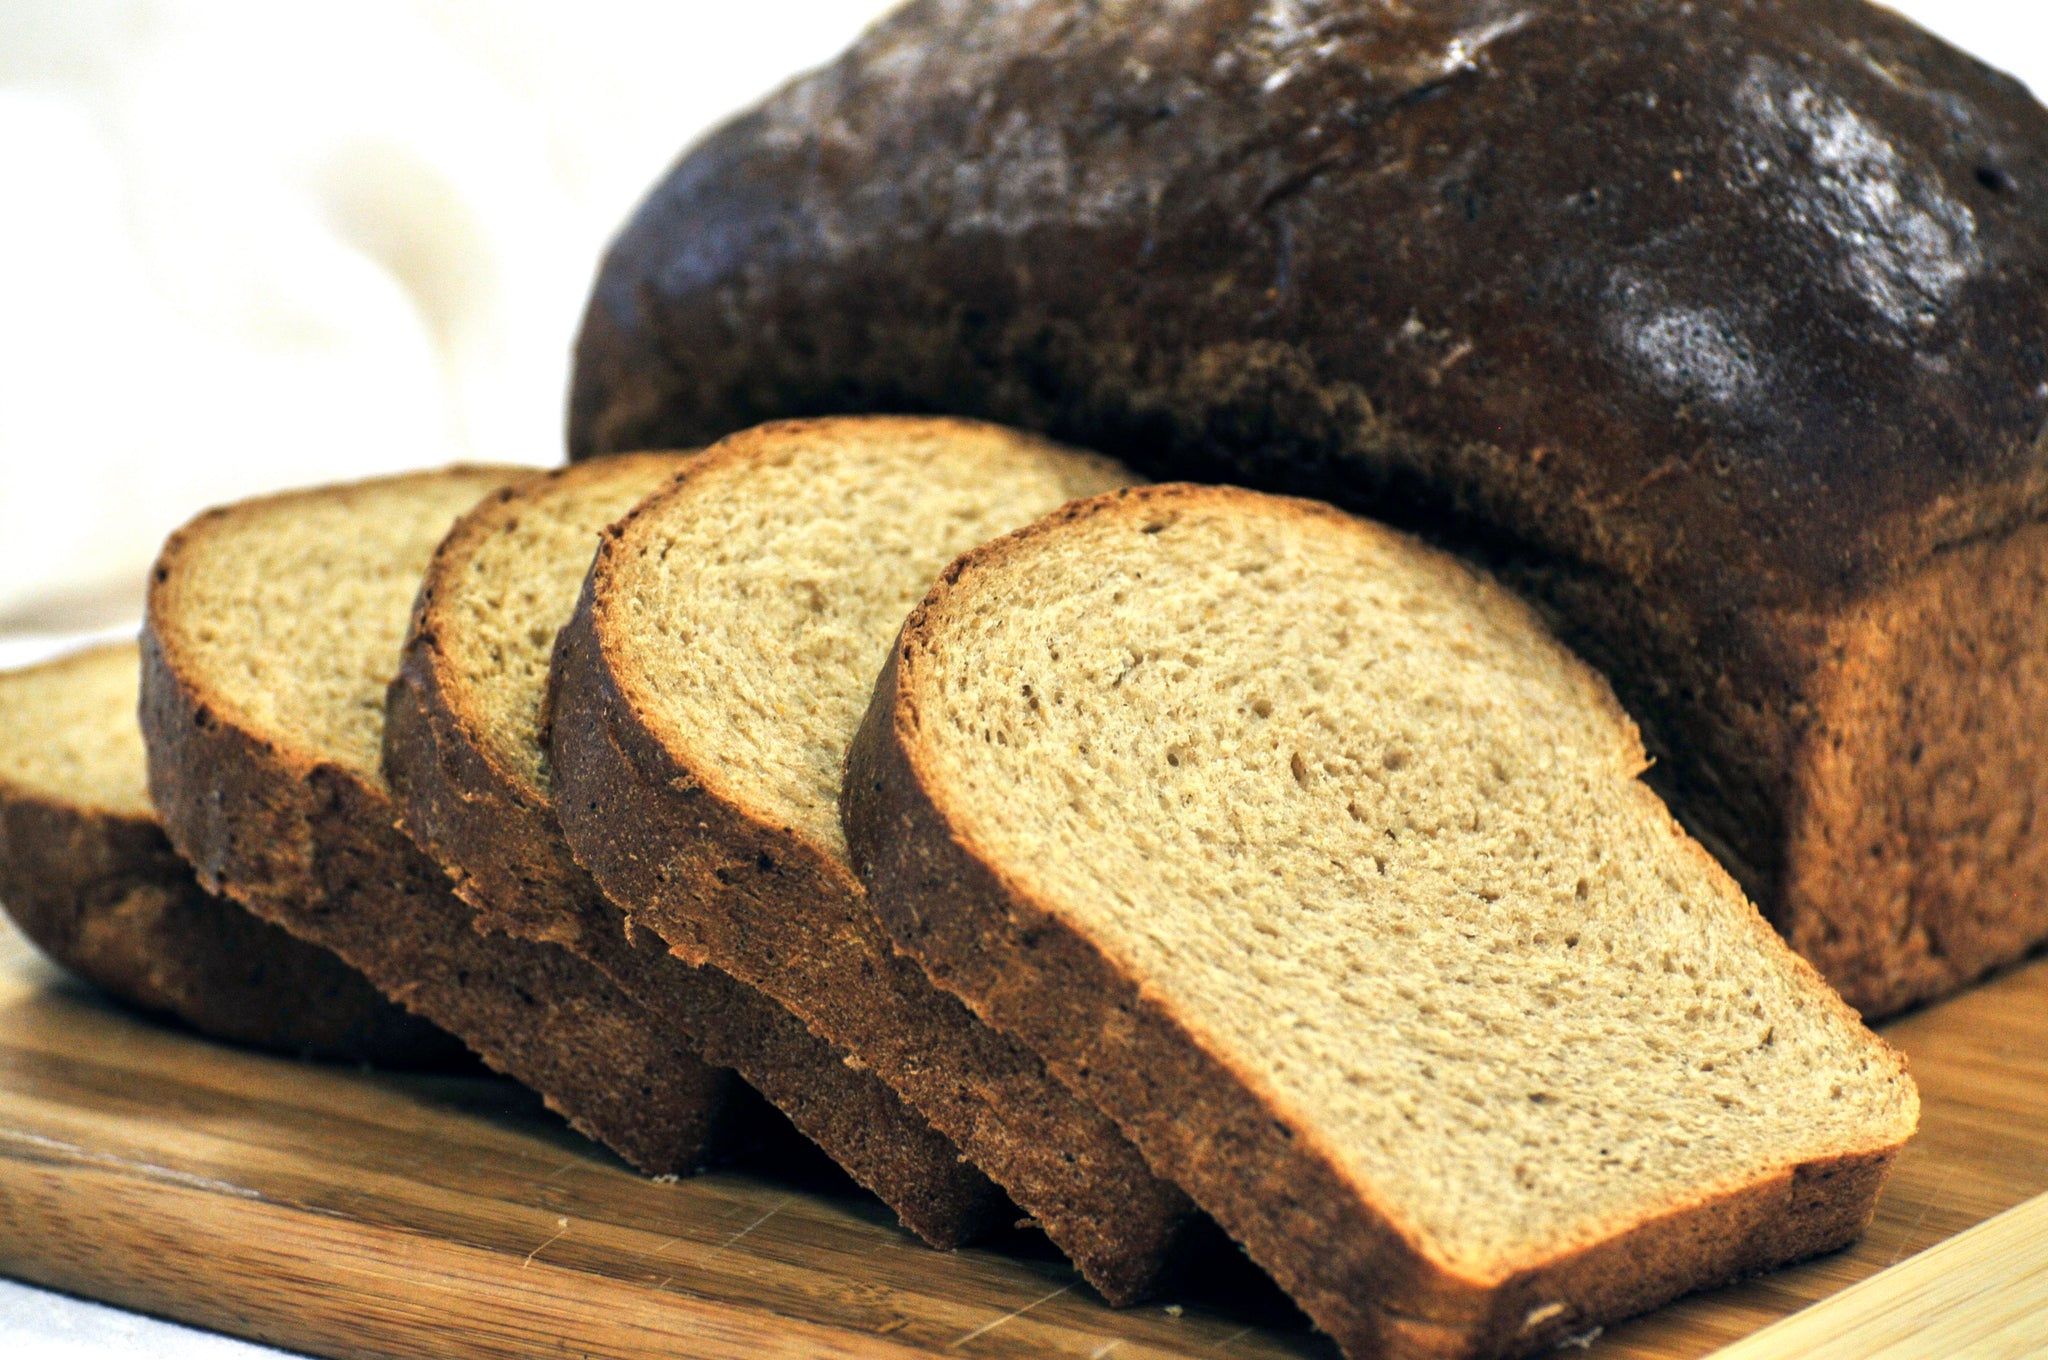 WHEAT BREAD - Anadama Bread